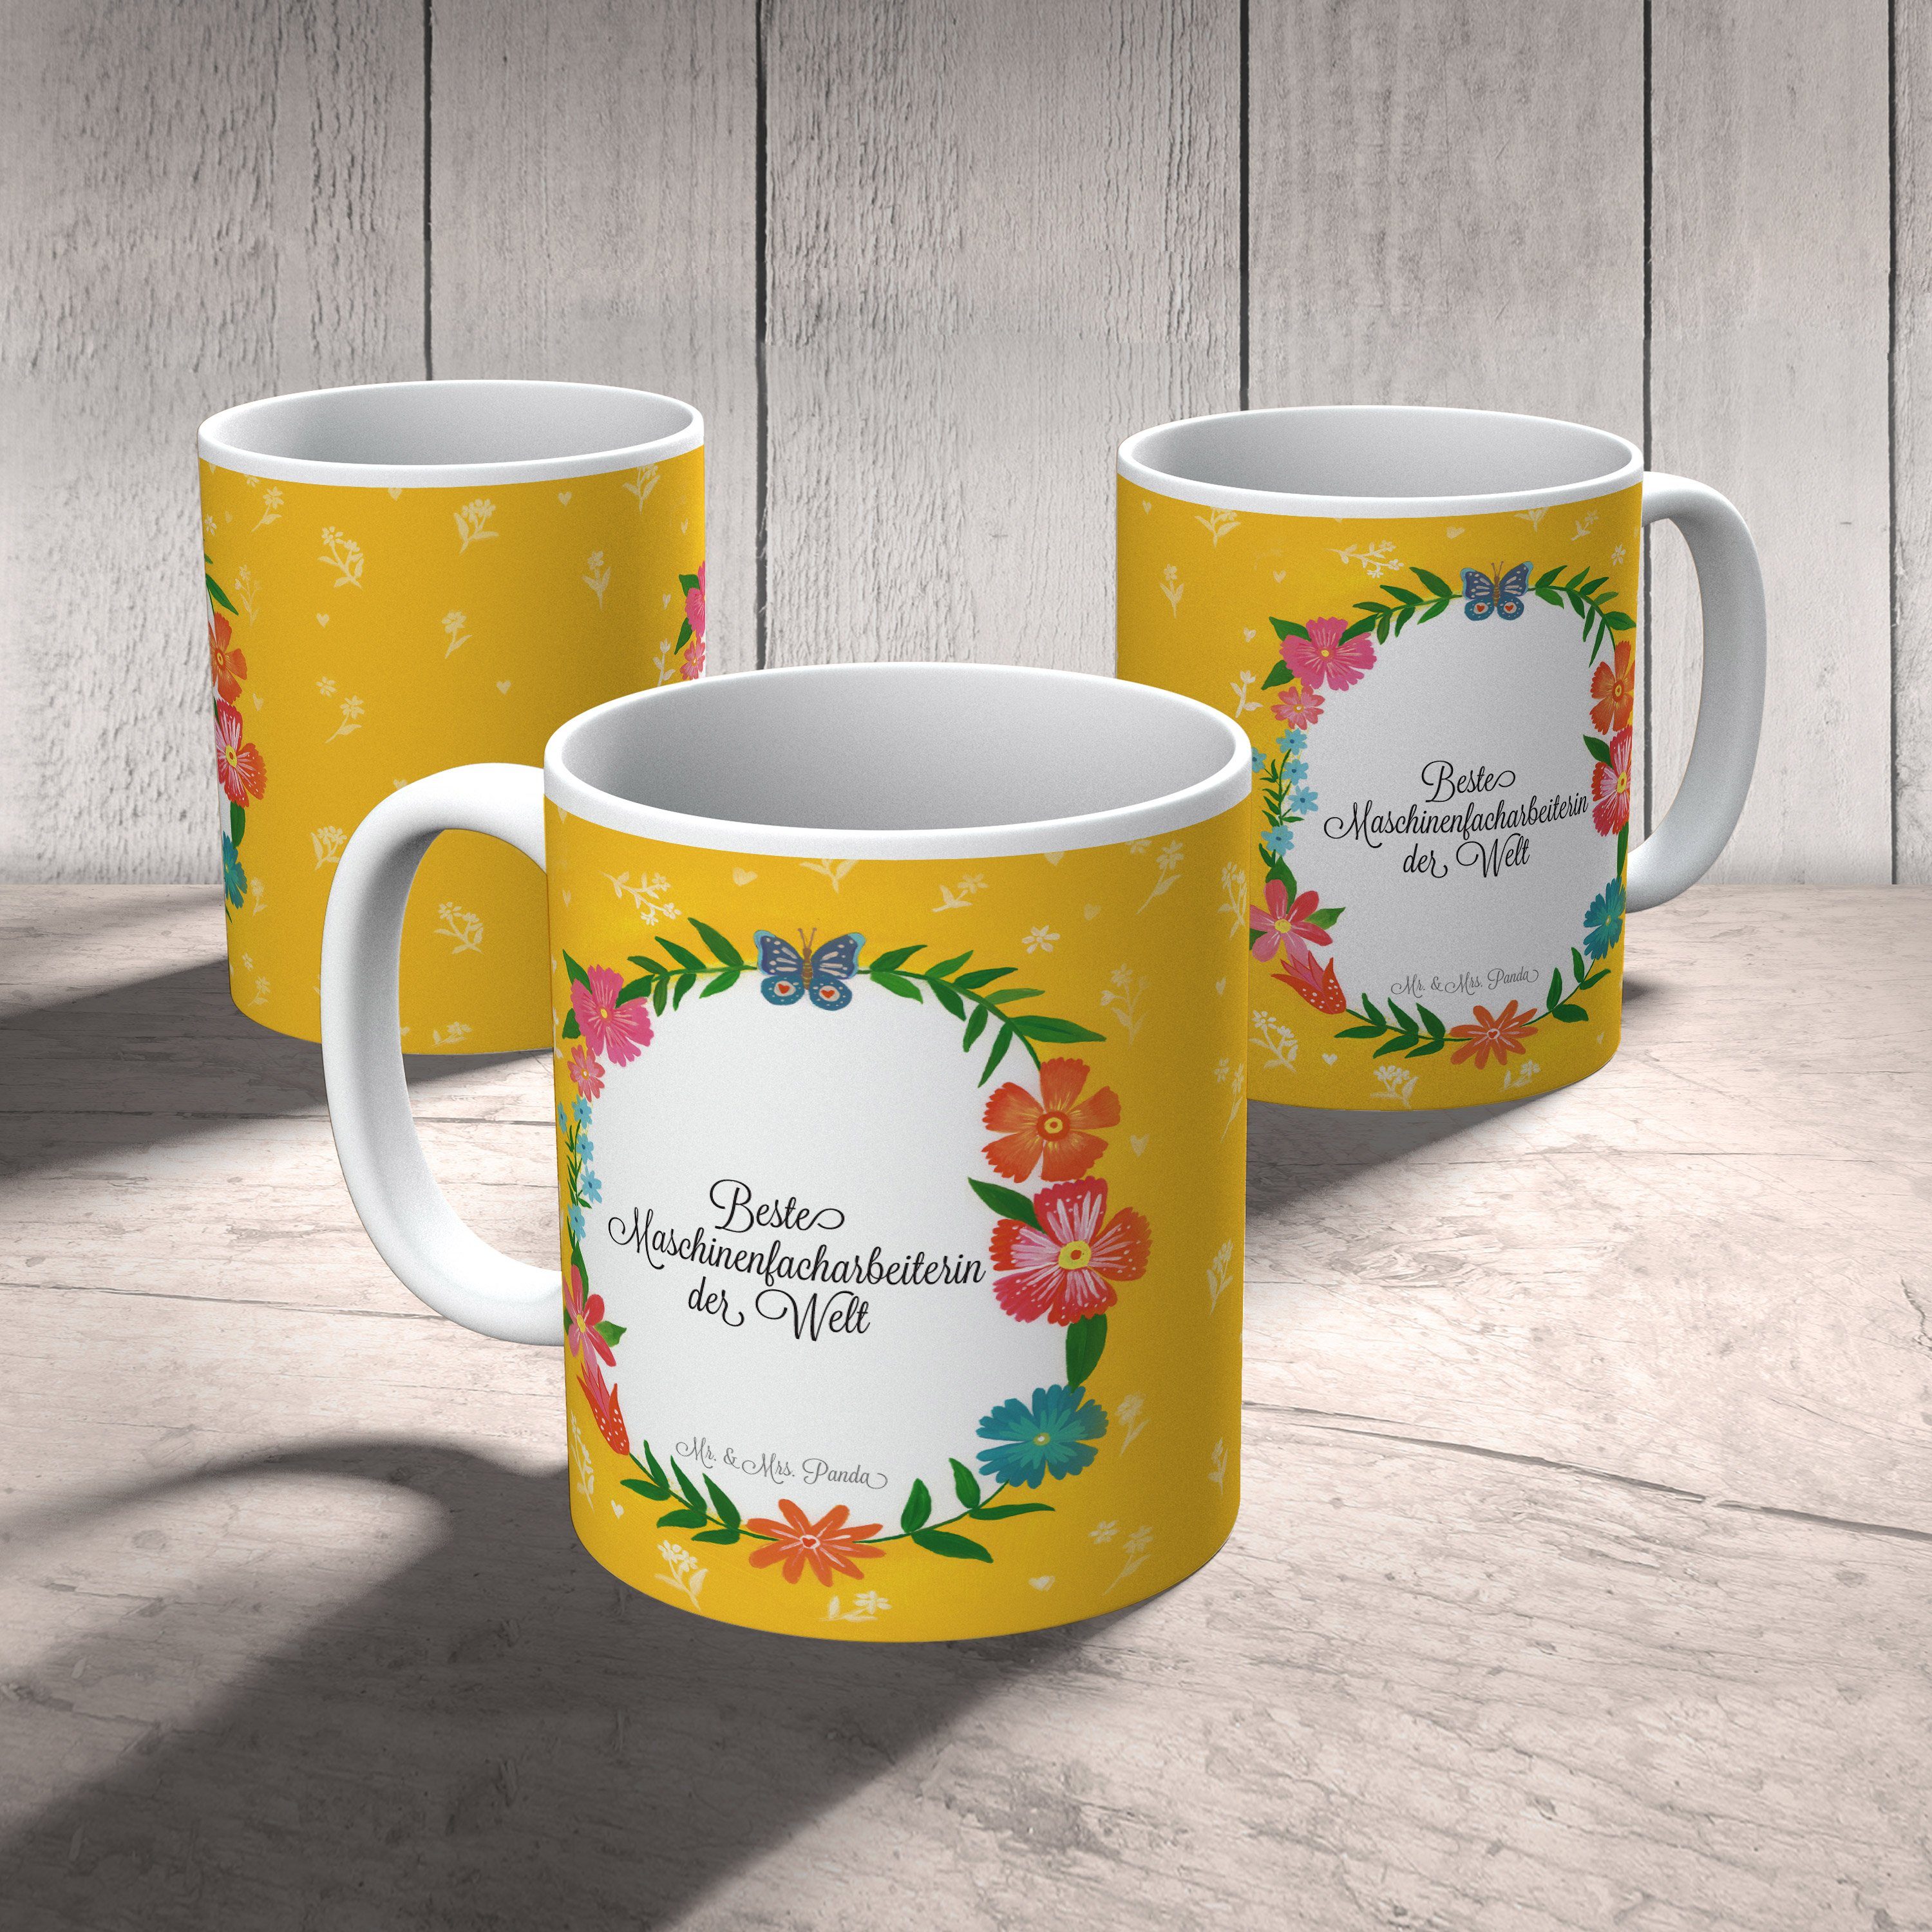 Mr. & Mrs. Panda Motive, - Maschinenfacharbeiterin Tasse Tasse Rente, Kaffeebecher, Geschenk, Keramik